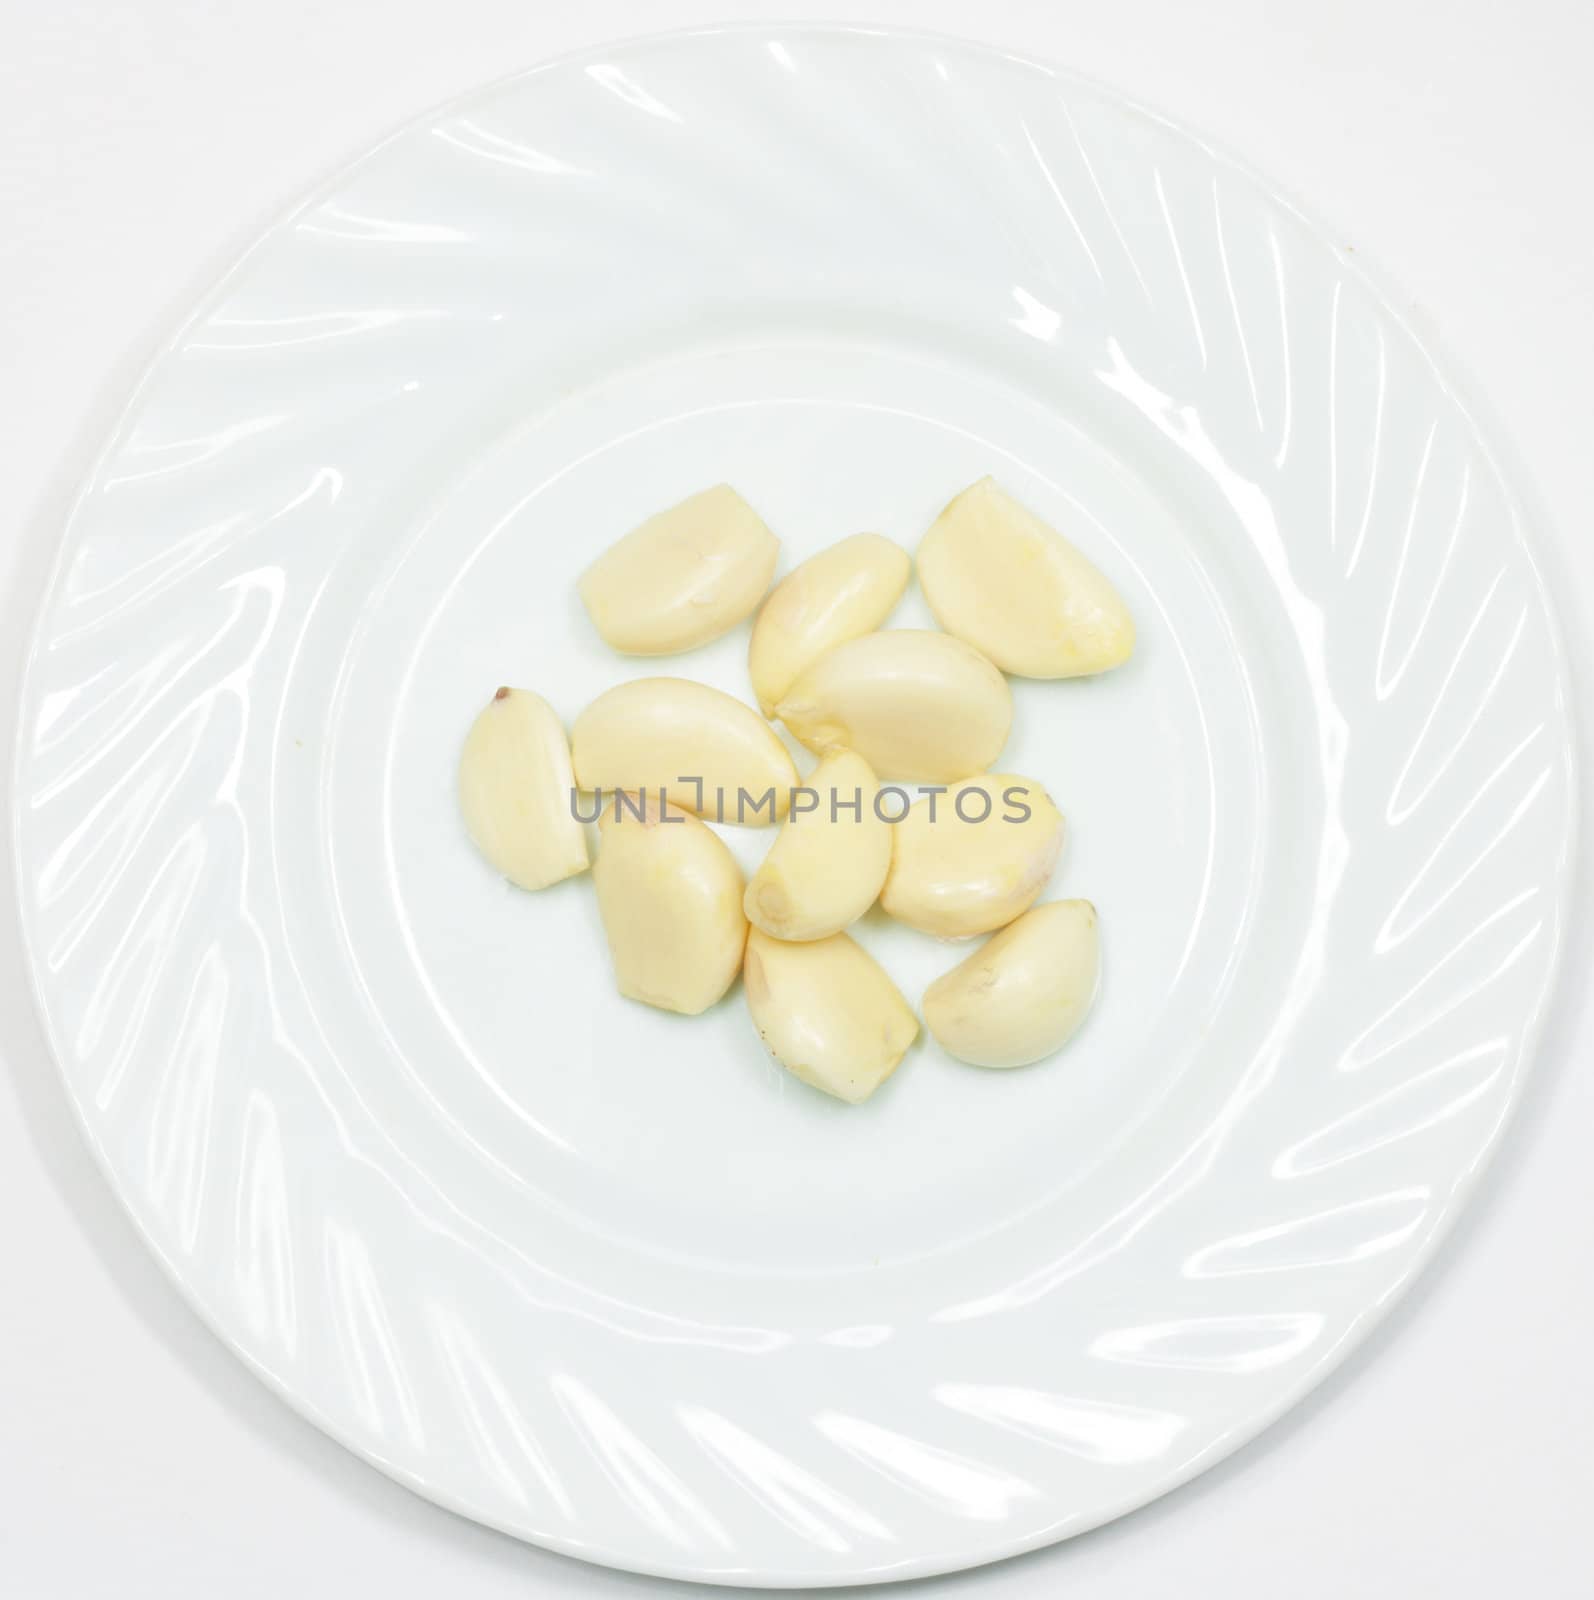 peeled garlic in the dish